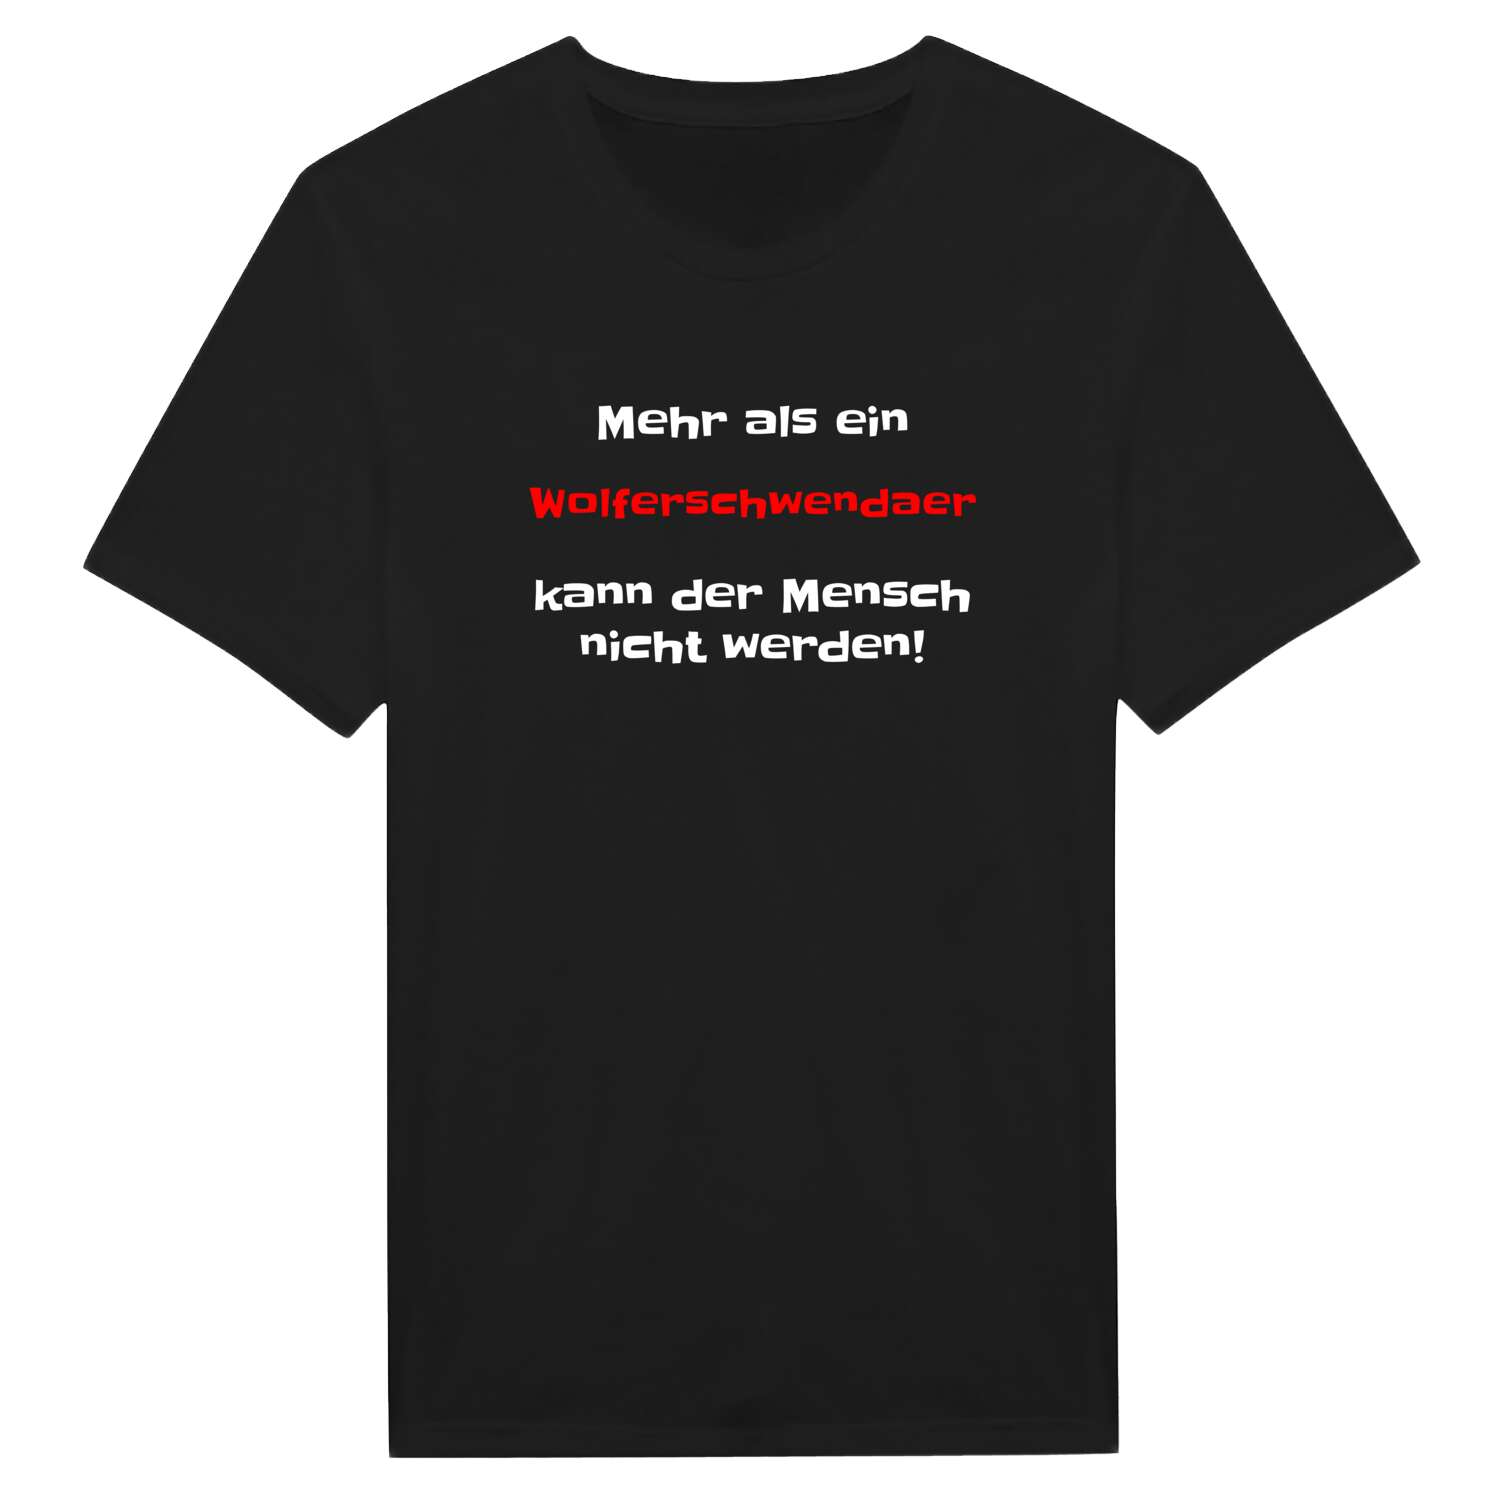 Wolferschwenda T-Shirt »Mehr als ein«